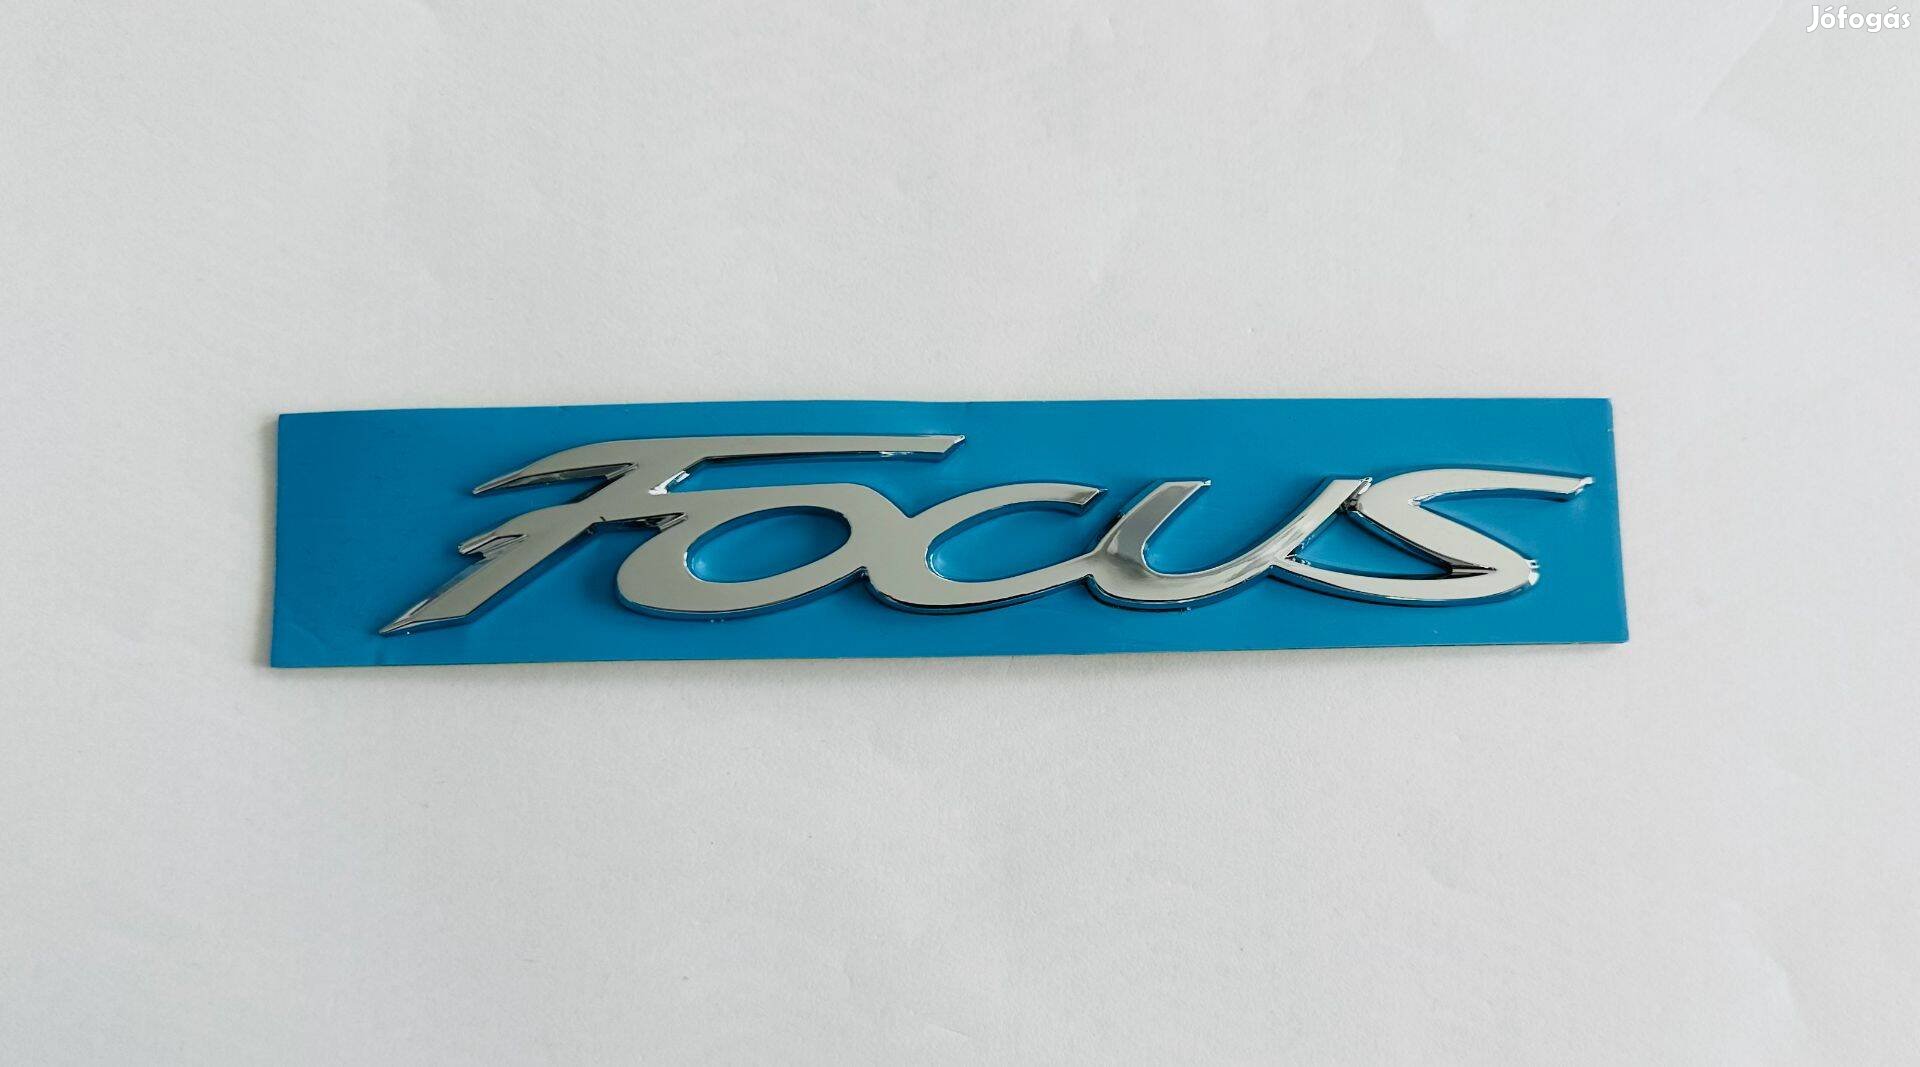 Új Ford Focus felirat embléma jel logó kiegészítő gépház csomagtér